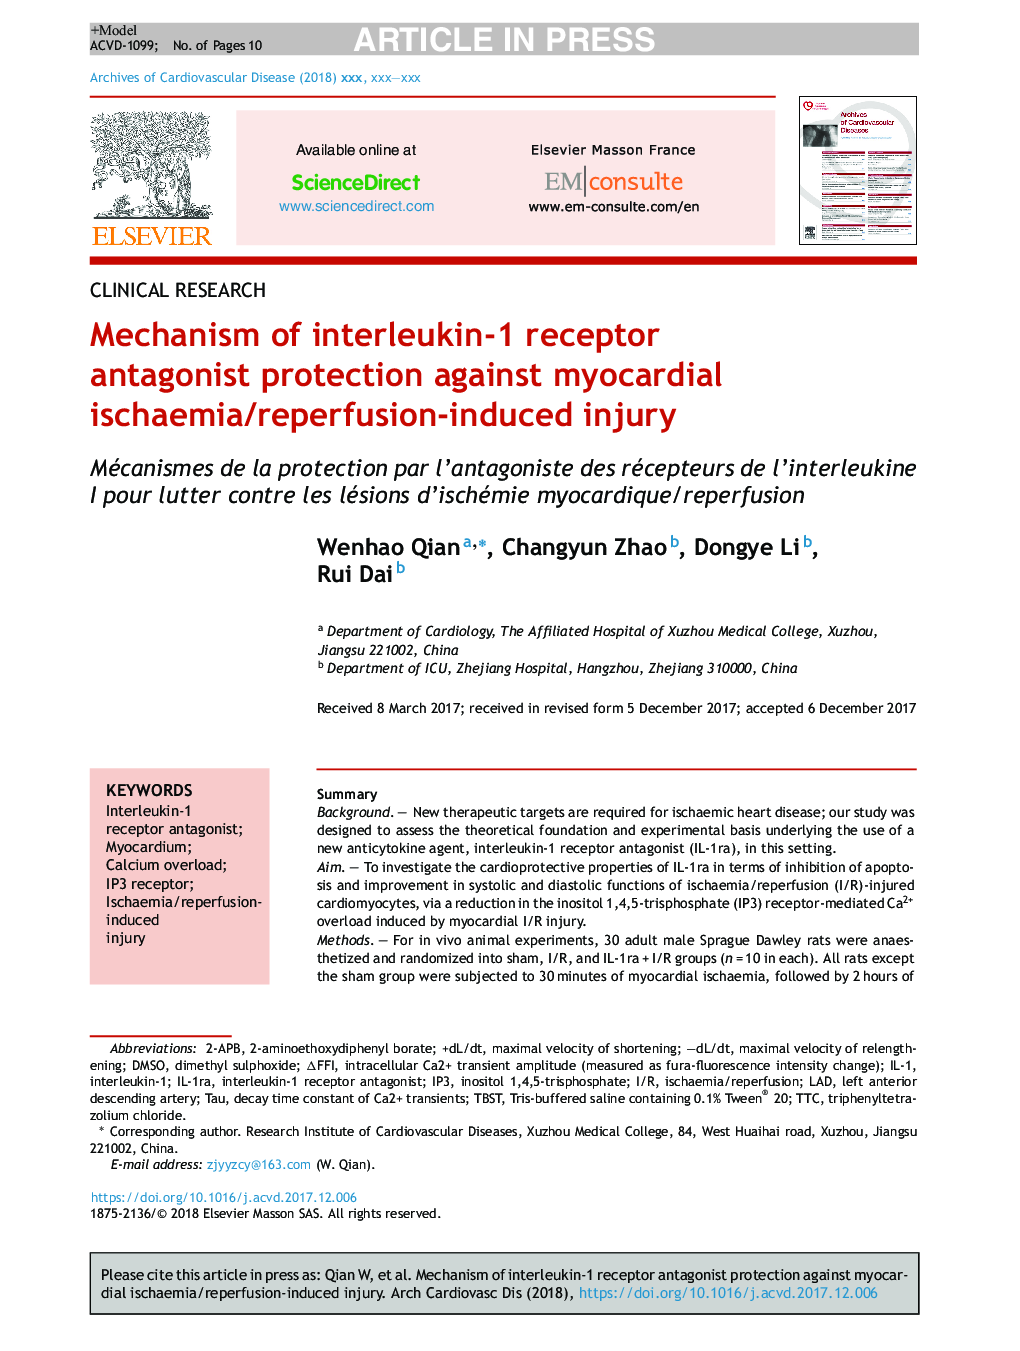 مکانیسم محافظت آنتاگونیست گیرنده اینترلوکین-1 در برابر آسیب ناشی از ایسکمی / رپرفیوژن میوکارد